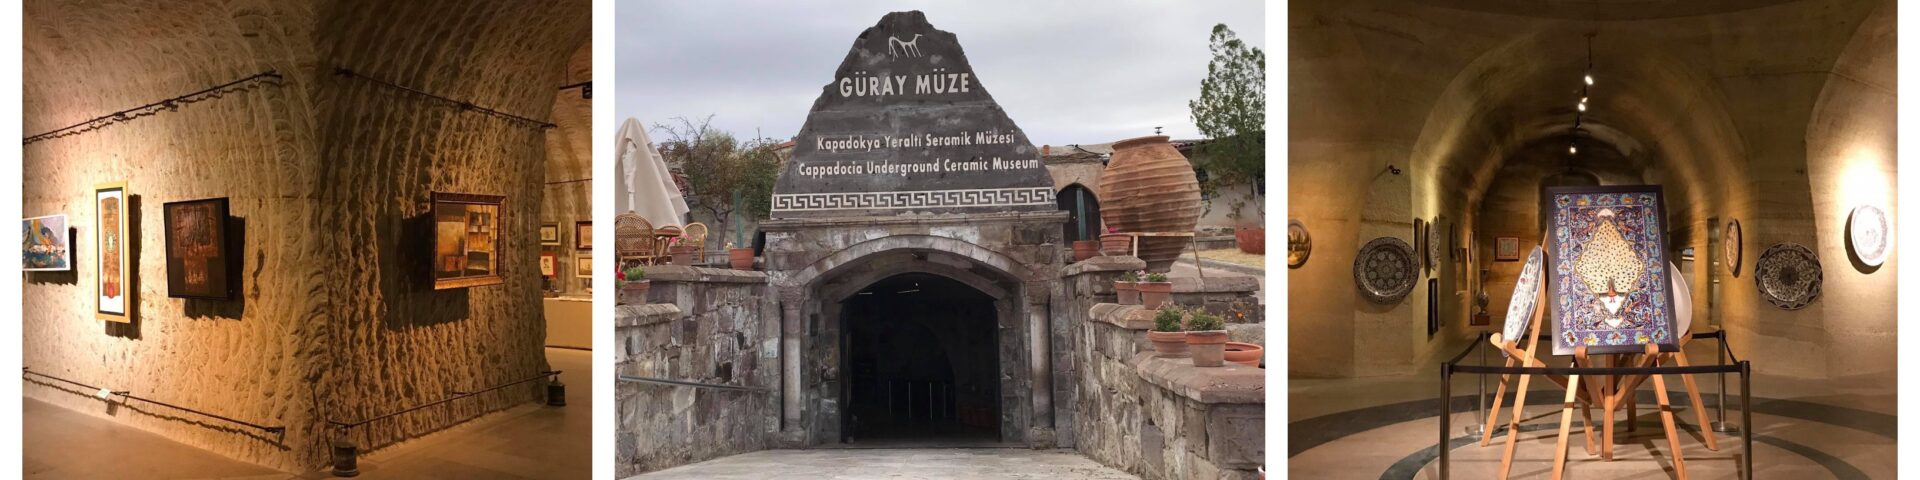 güray museum i kappadokien, güray museum i cappadocia, oplevelser i kappadokien, oplevelser i cappadocia, oplevelser i avanos, museer i avanos, keramik værksted i avanos,